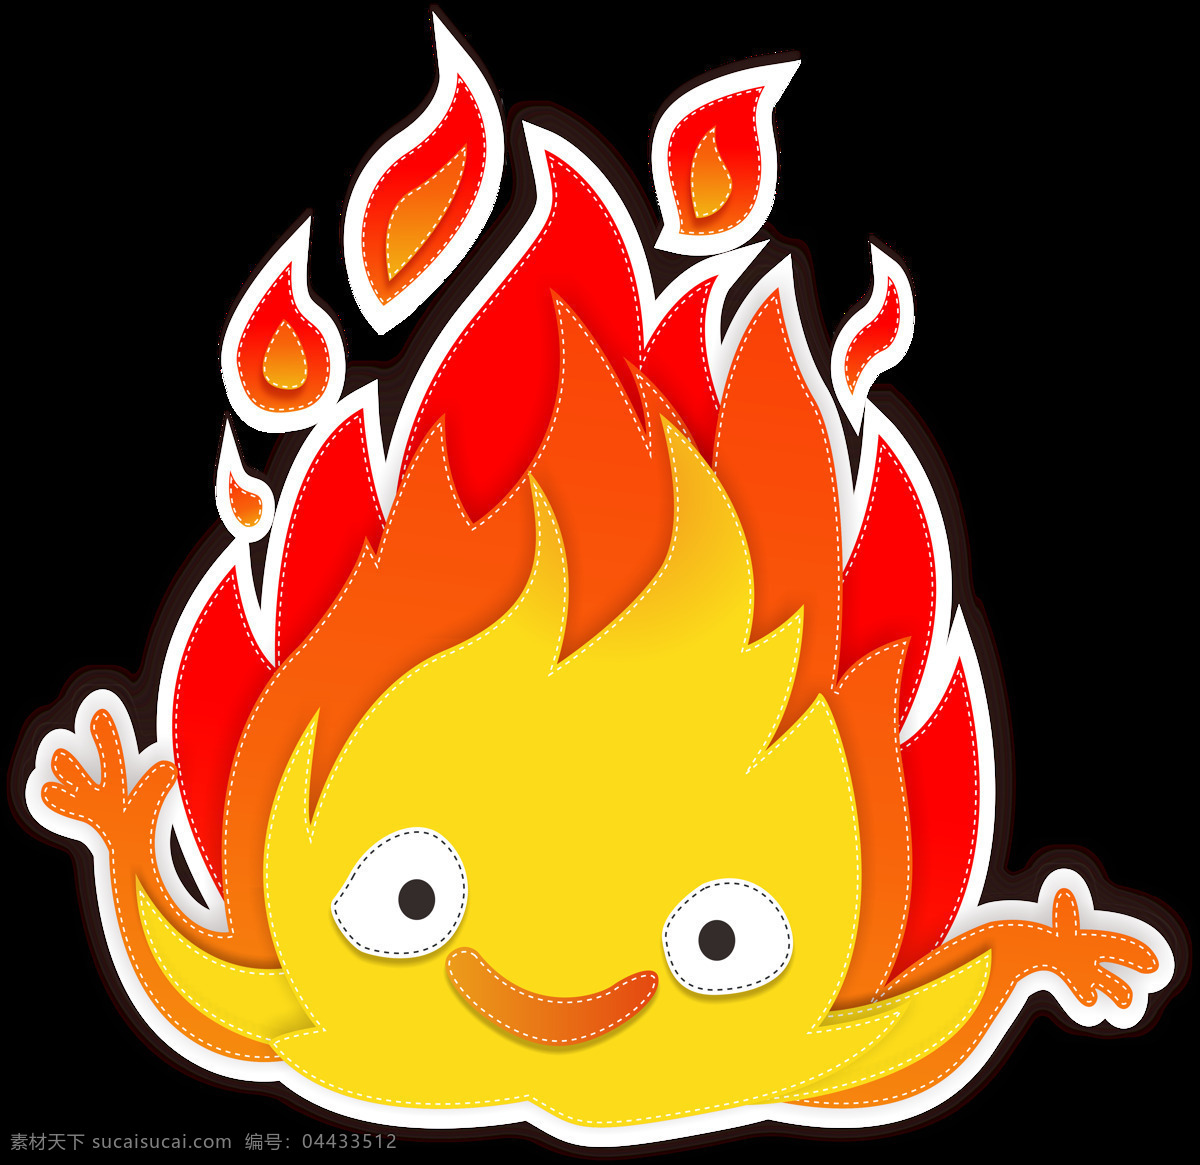 焰 火 火花 火焰山 火表情 表情 福娃 火娃 火娃娃 娃娃 娃 红色 高光 logo 标志 公司logo 平面设计 灵感 创意 火苗 火种 图标